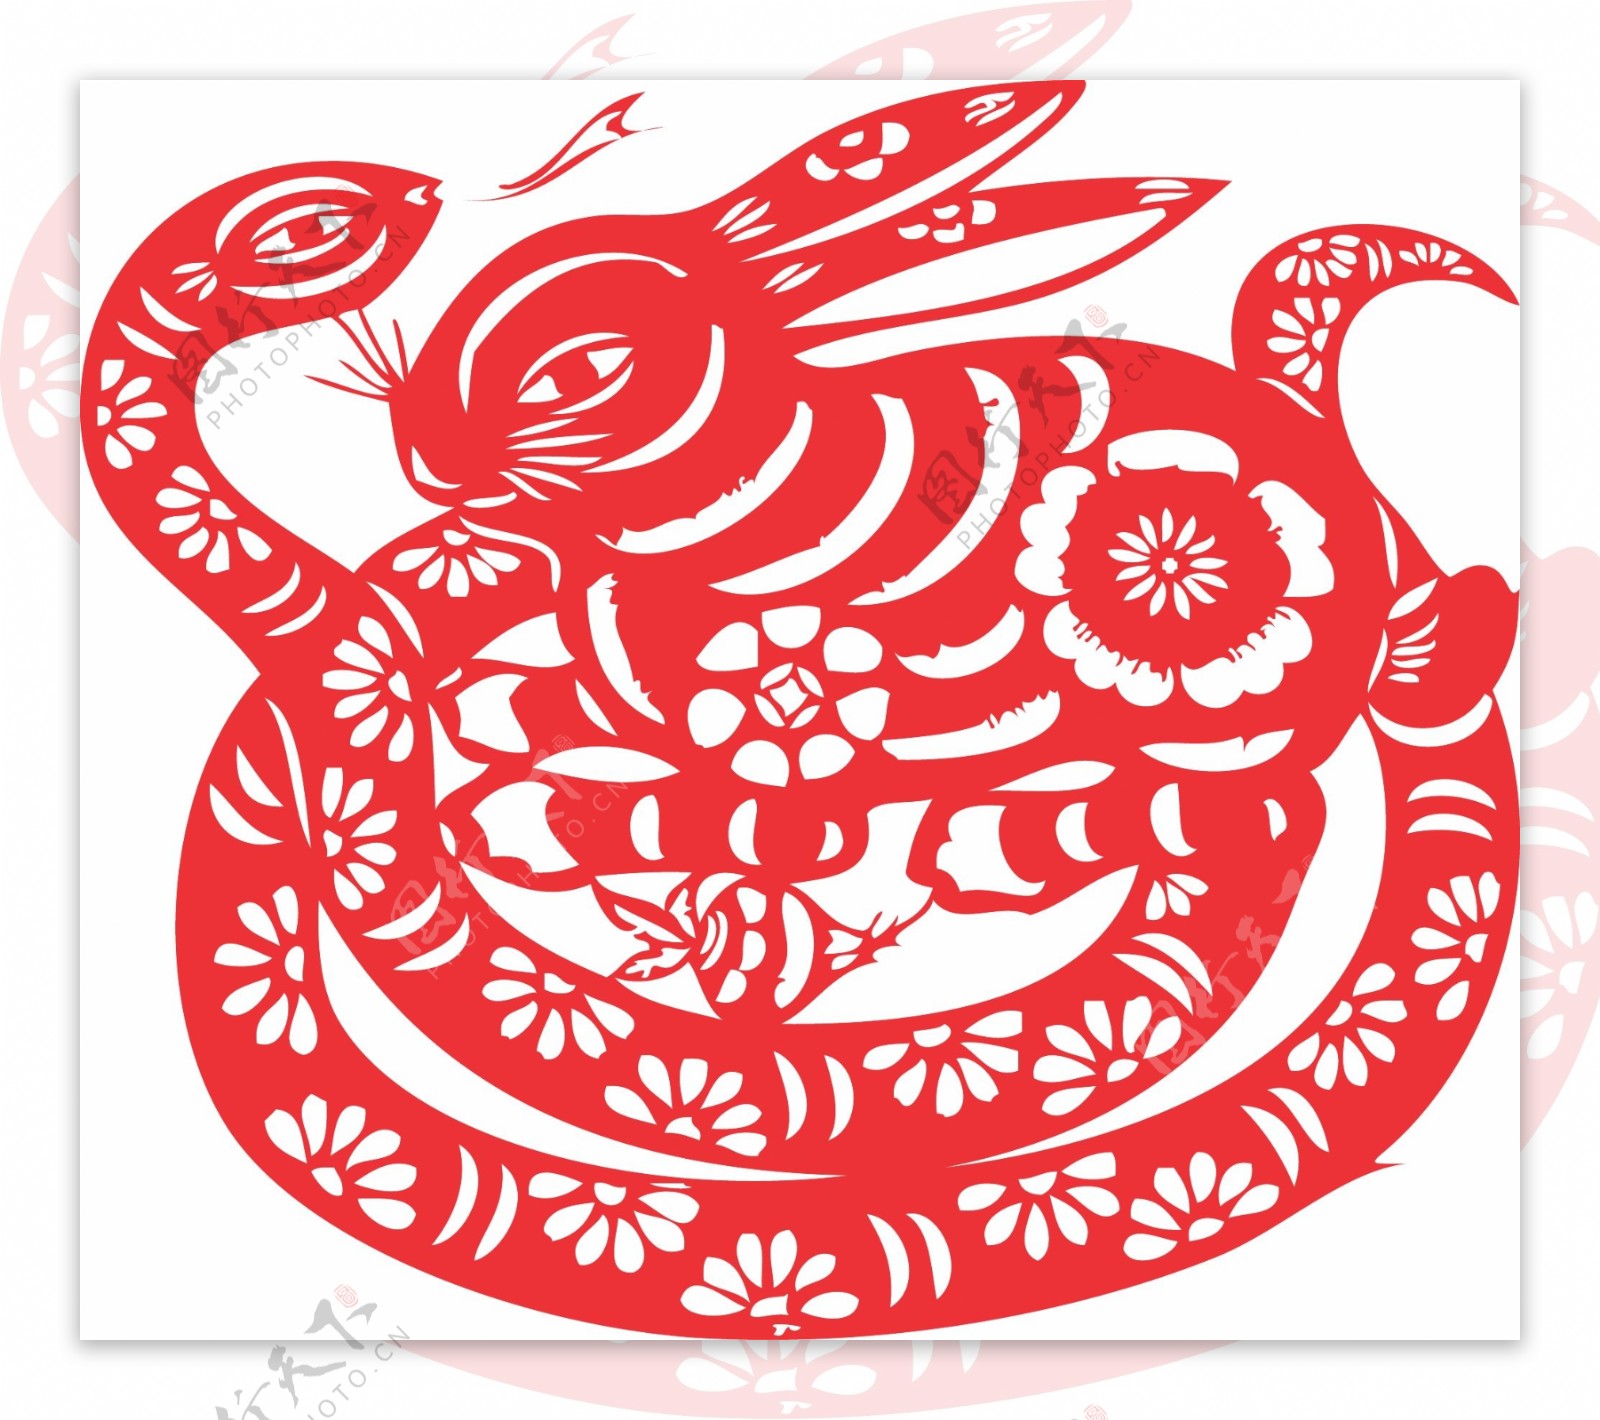 蛇盘兔-中国最美剪纸-图片